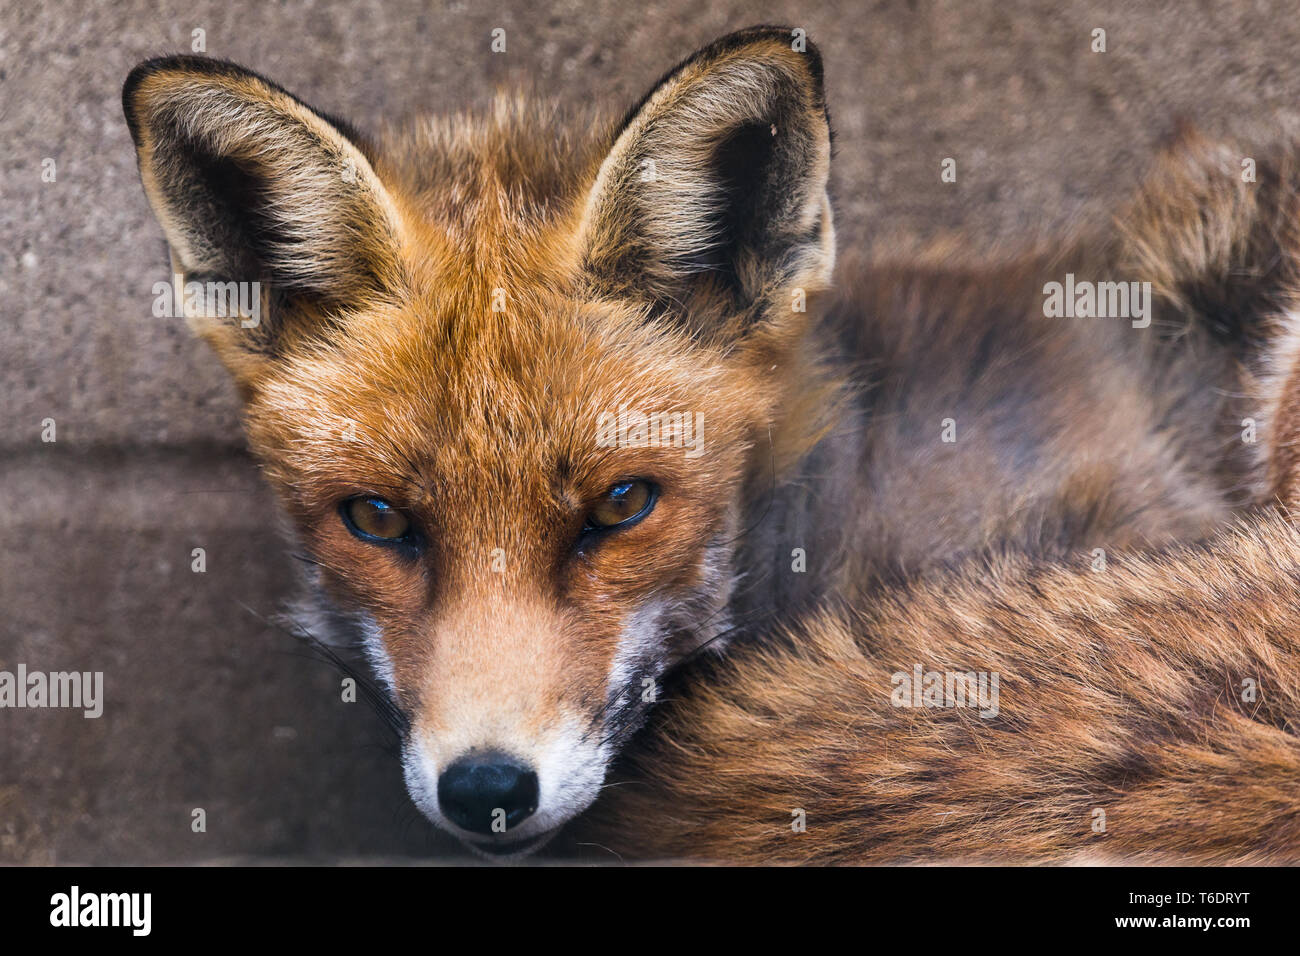 Eine gemeinsame Fox (chordata) weist die Kamera eine Nahaufnahme Portrait zu erstellen. Stockfoto